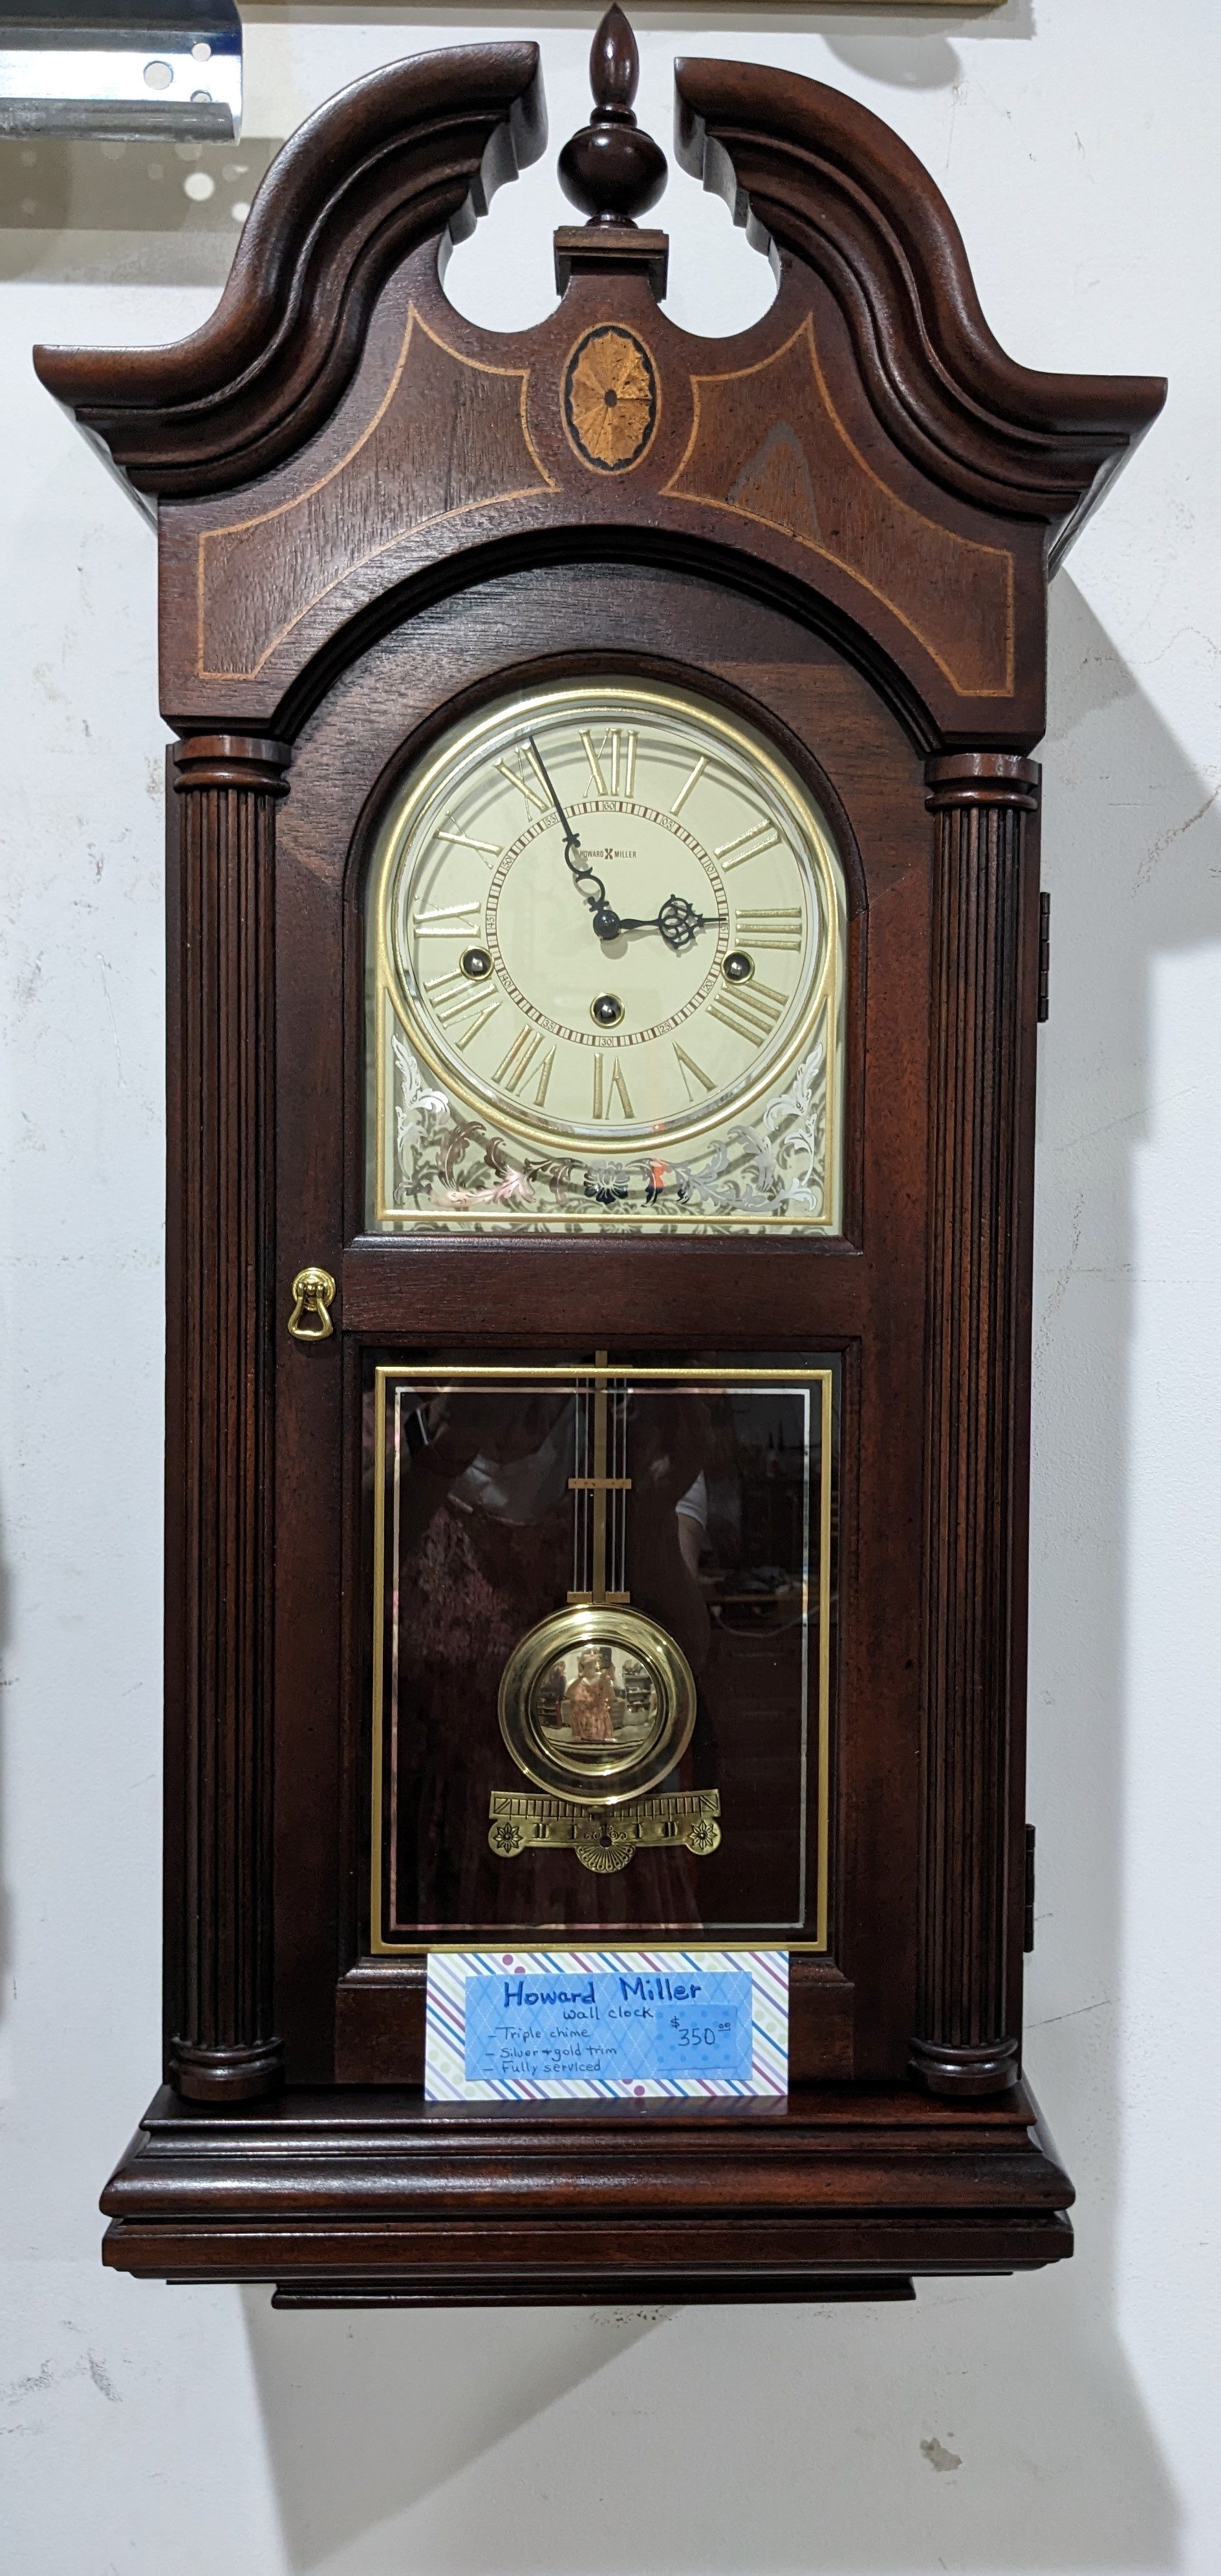 Howard Miller Wall Clock — $350